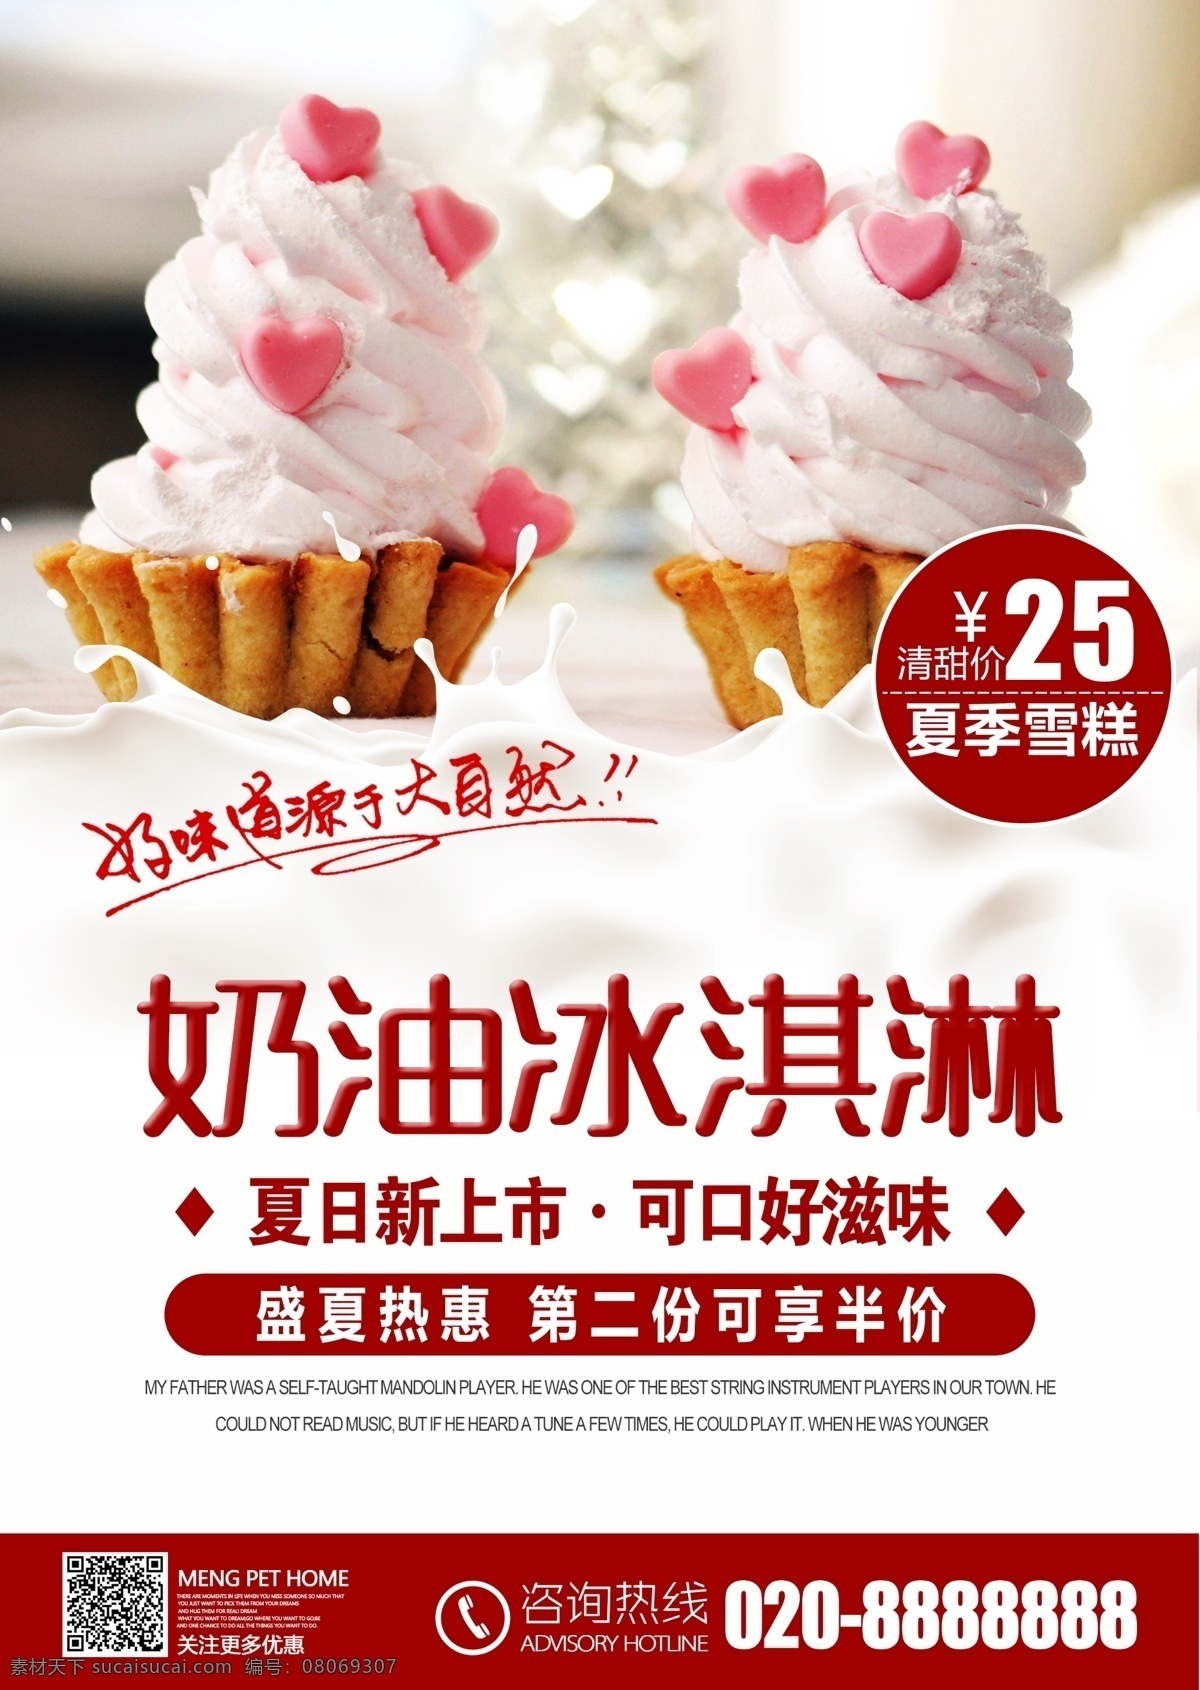 夏季 冰淇淋 海报 甜品 奶茶 蛋糕 冰激凌 雪糕 海报模板 便利店 牛奶 模板